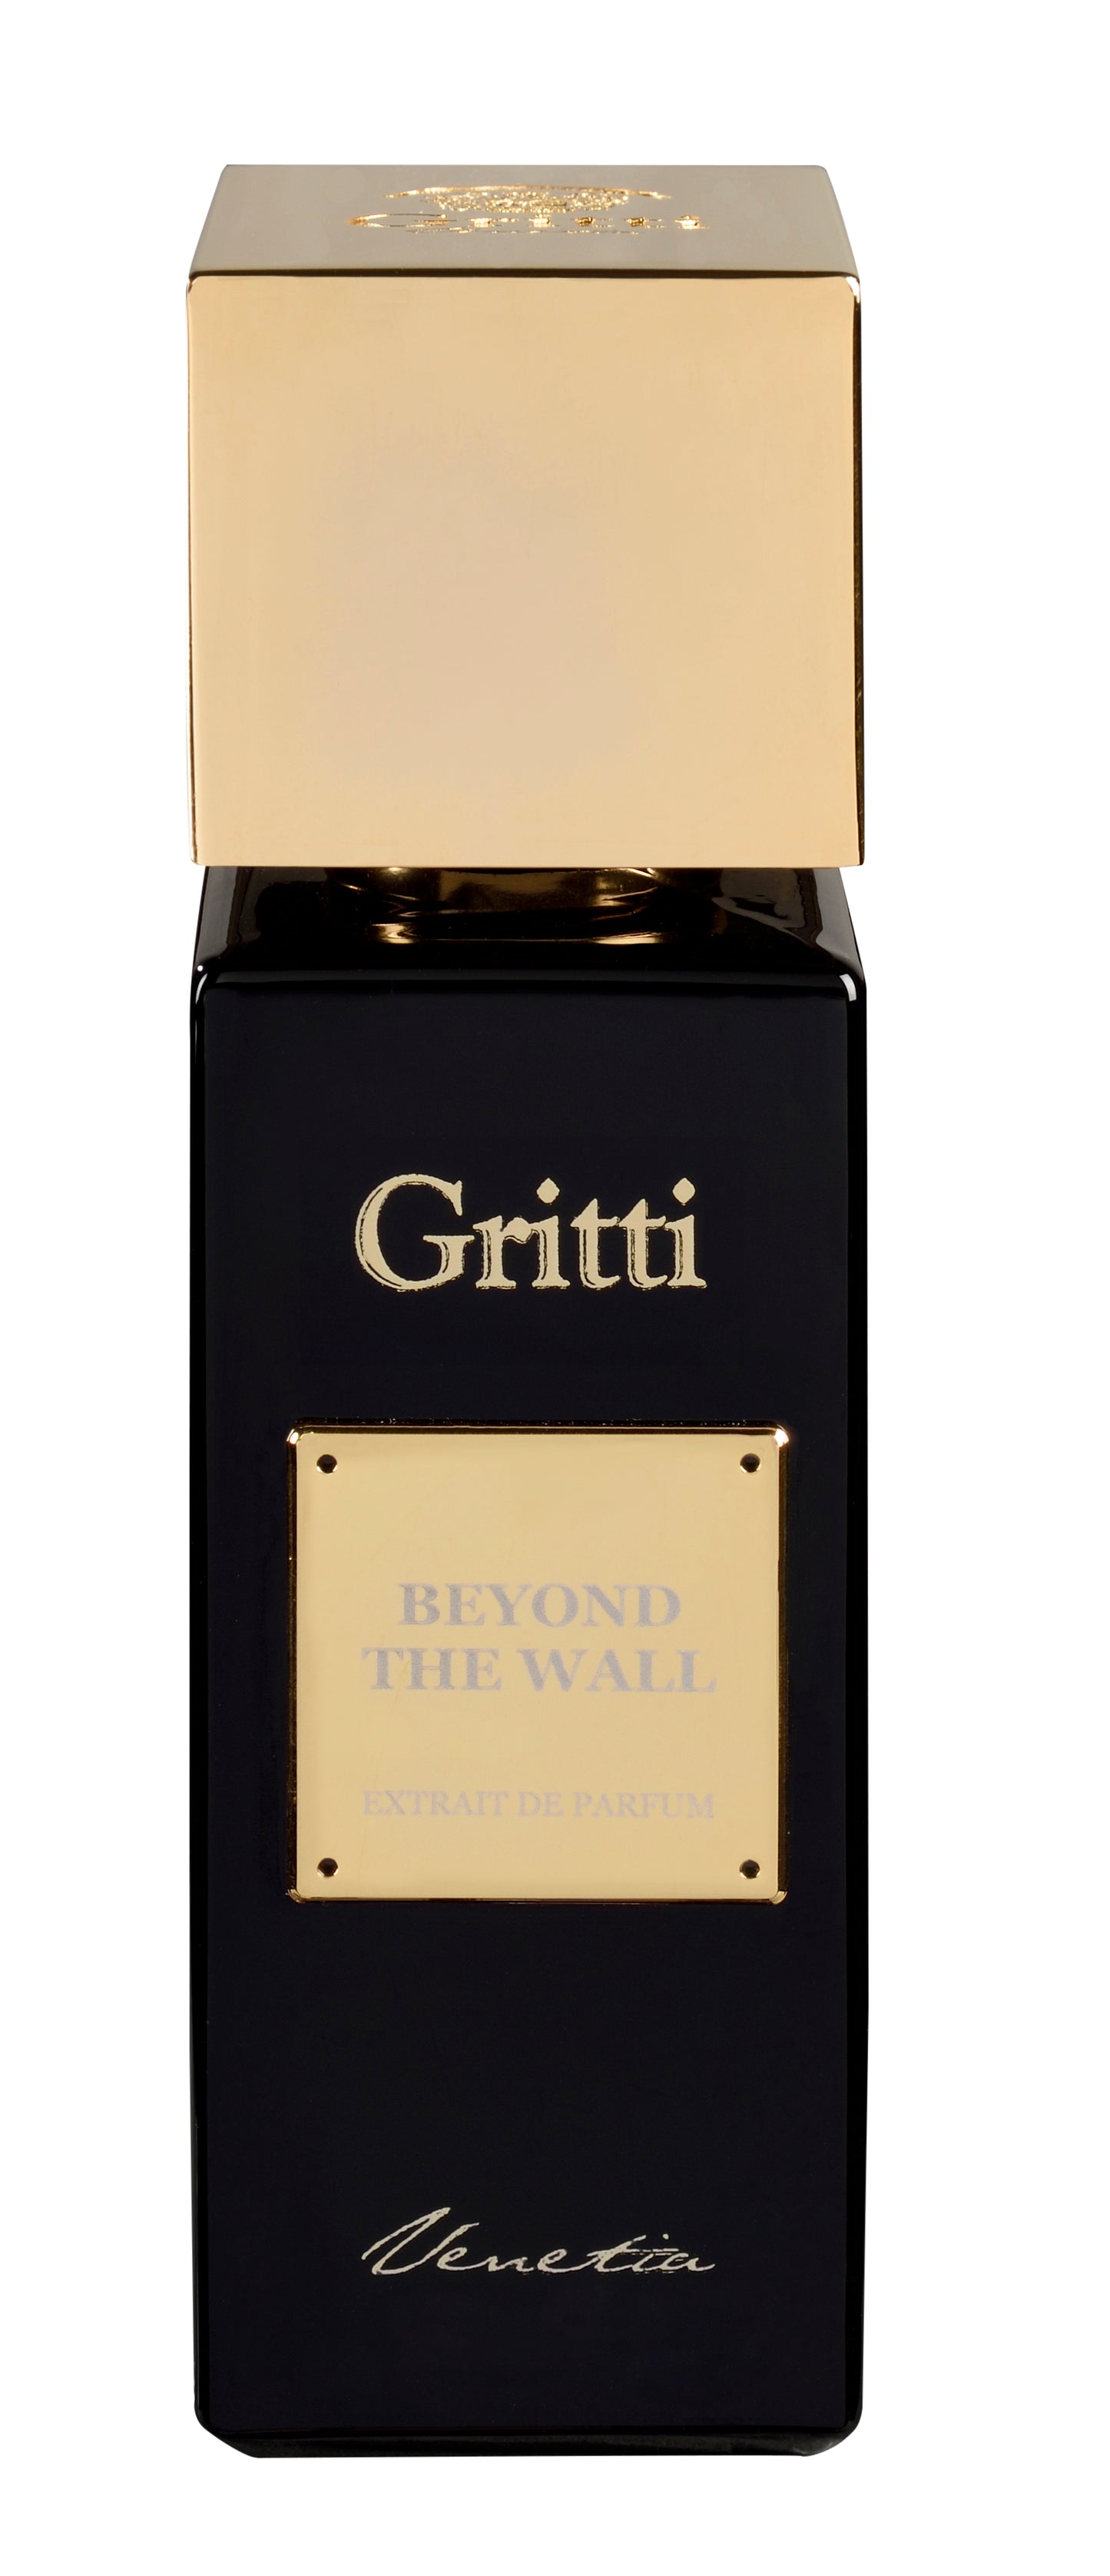 Beyond The Wall Gritti Extrait de Parfum 100ml